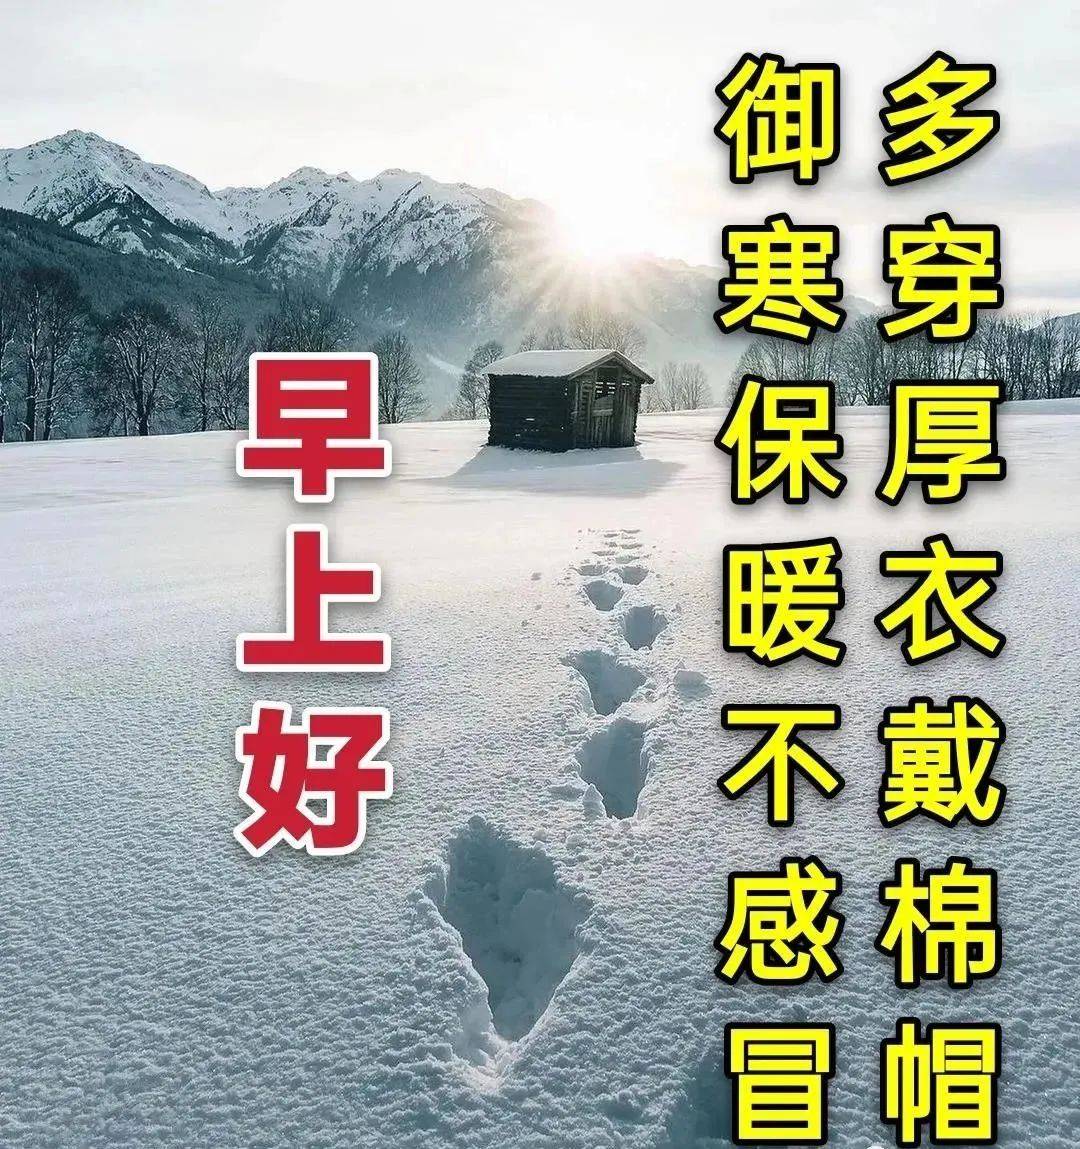 7张最美冬日雪景早上好图片带字带祝福语 2022好看的冬日风景早安祝福